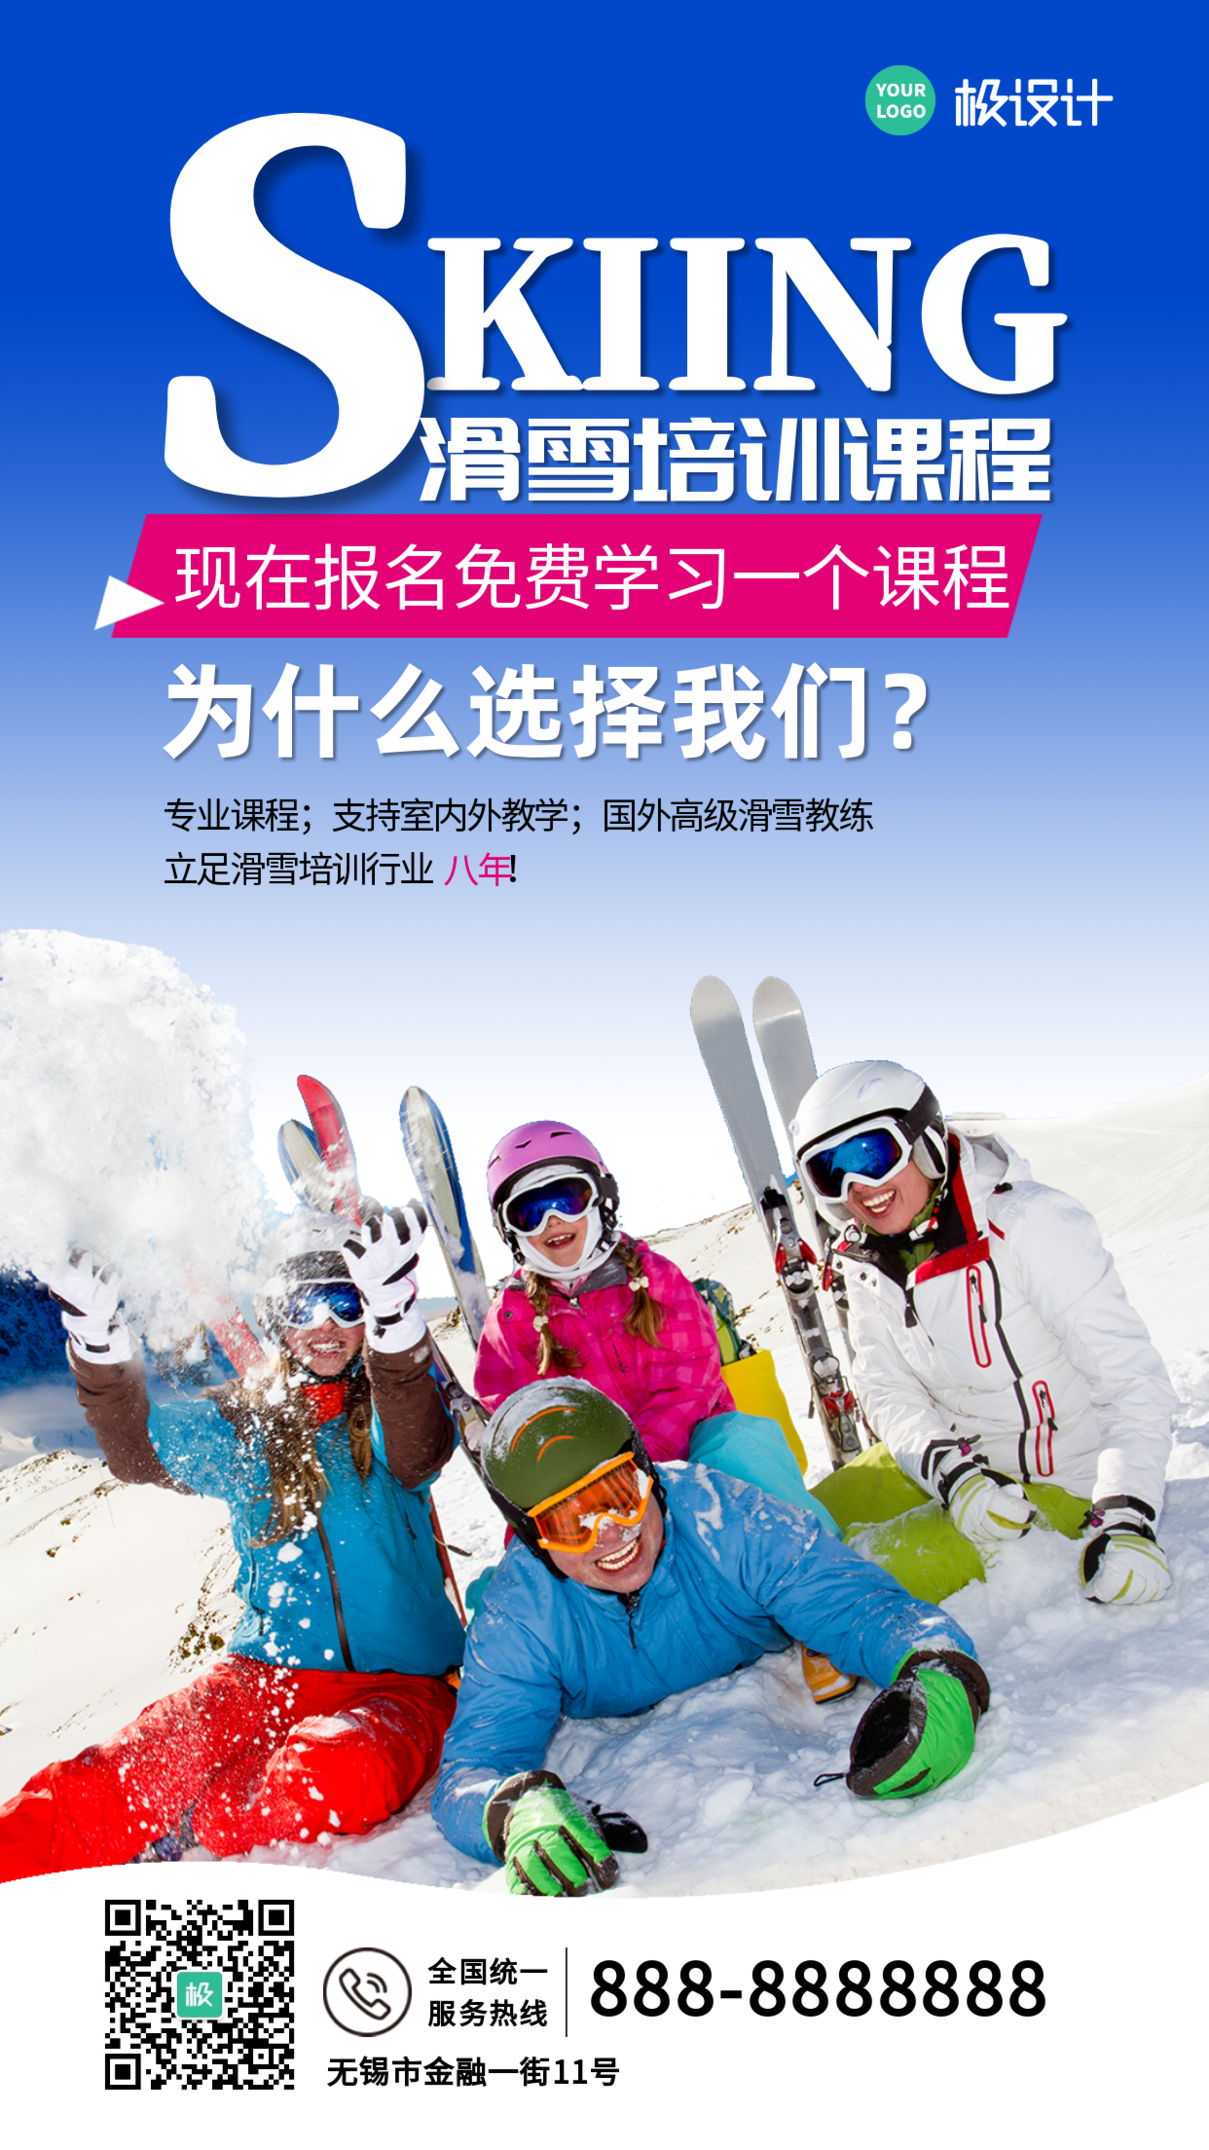 免费体验滑雪课程